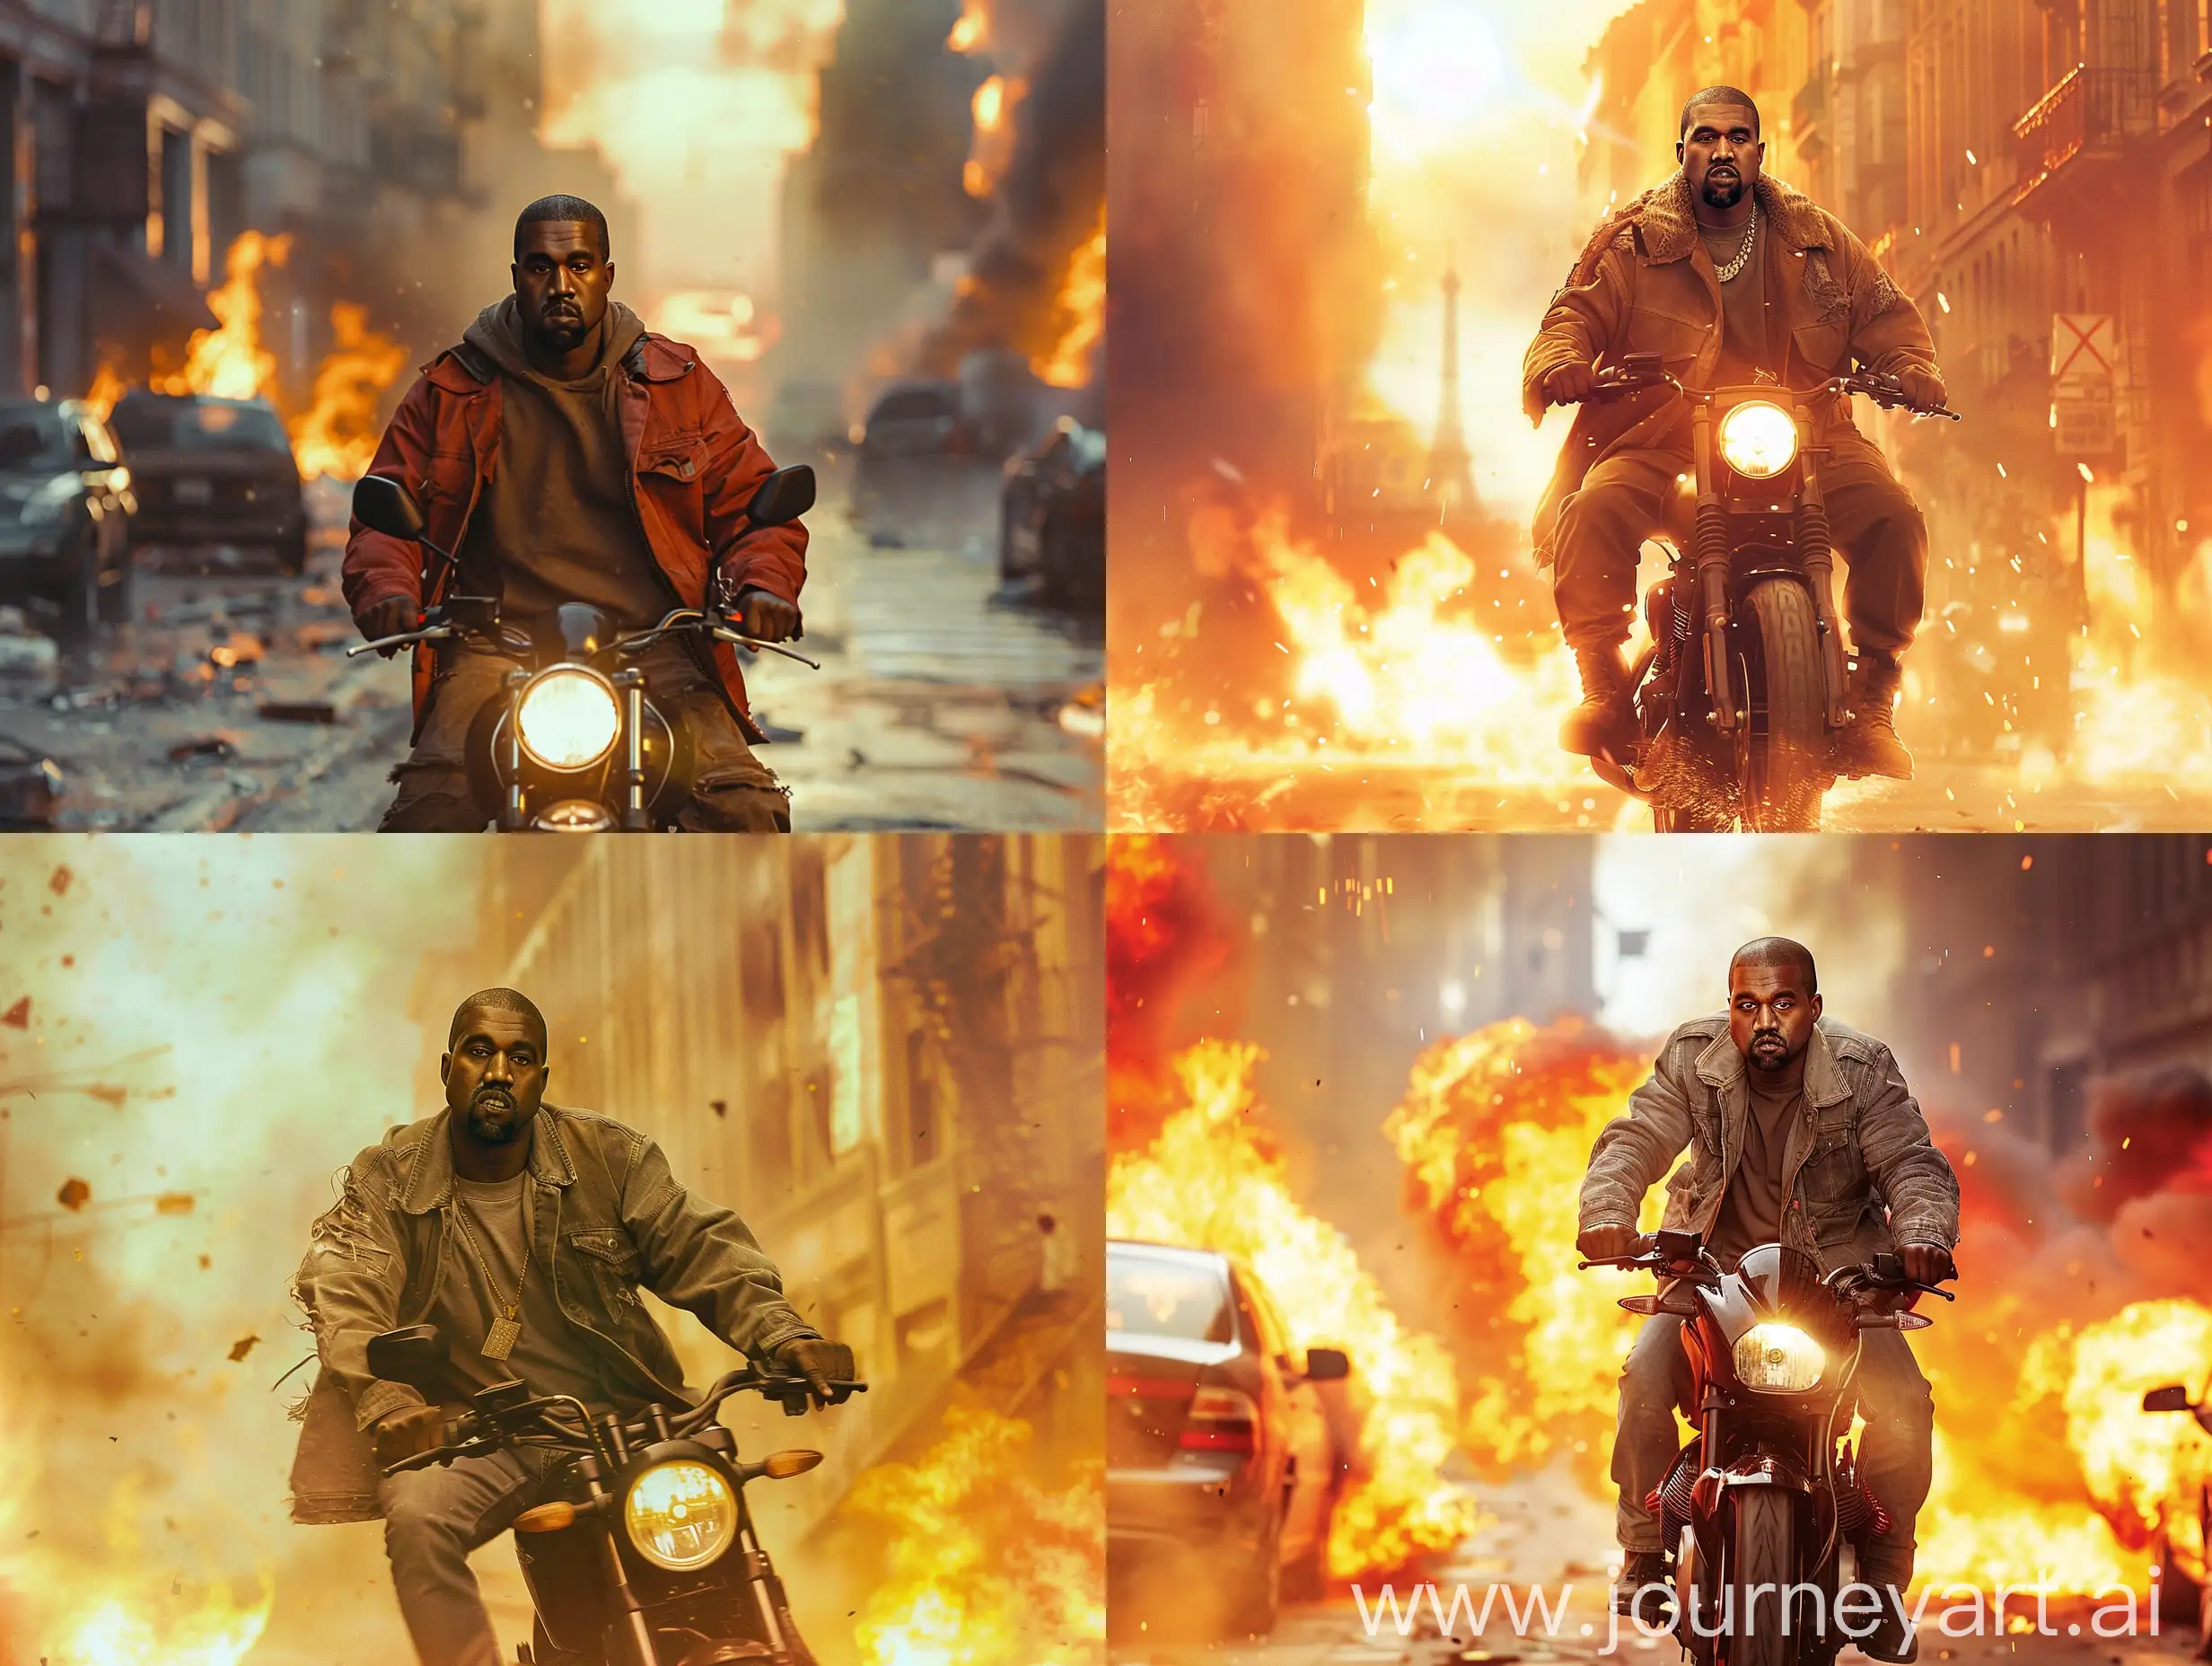 Kanye-West-Escapes-Burning-City-on-Motorbike